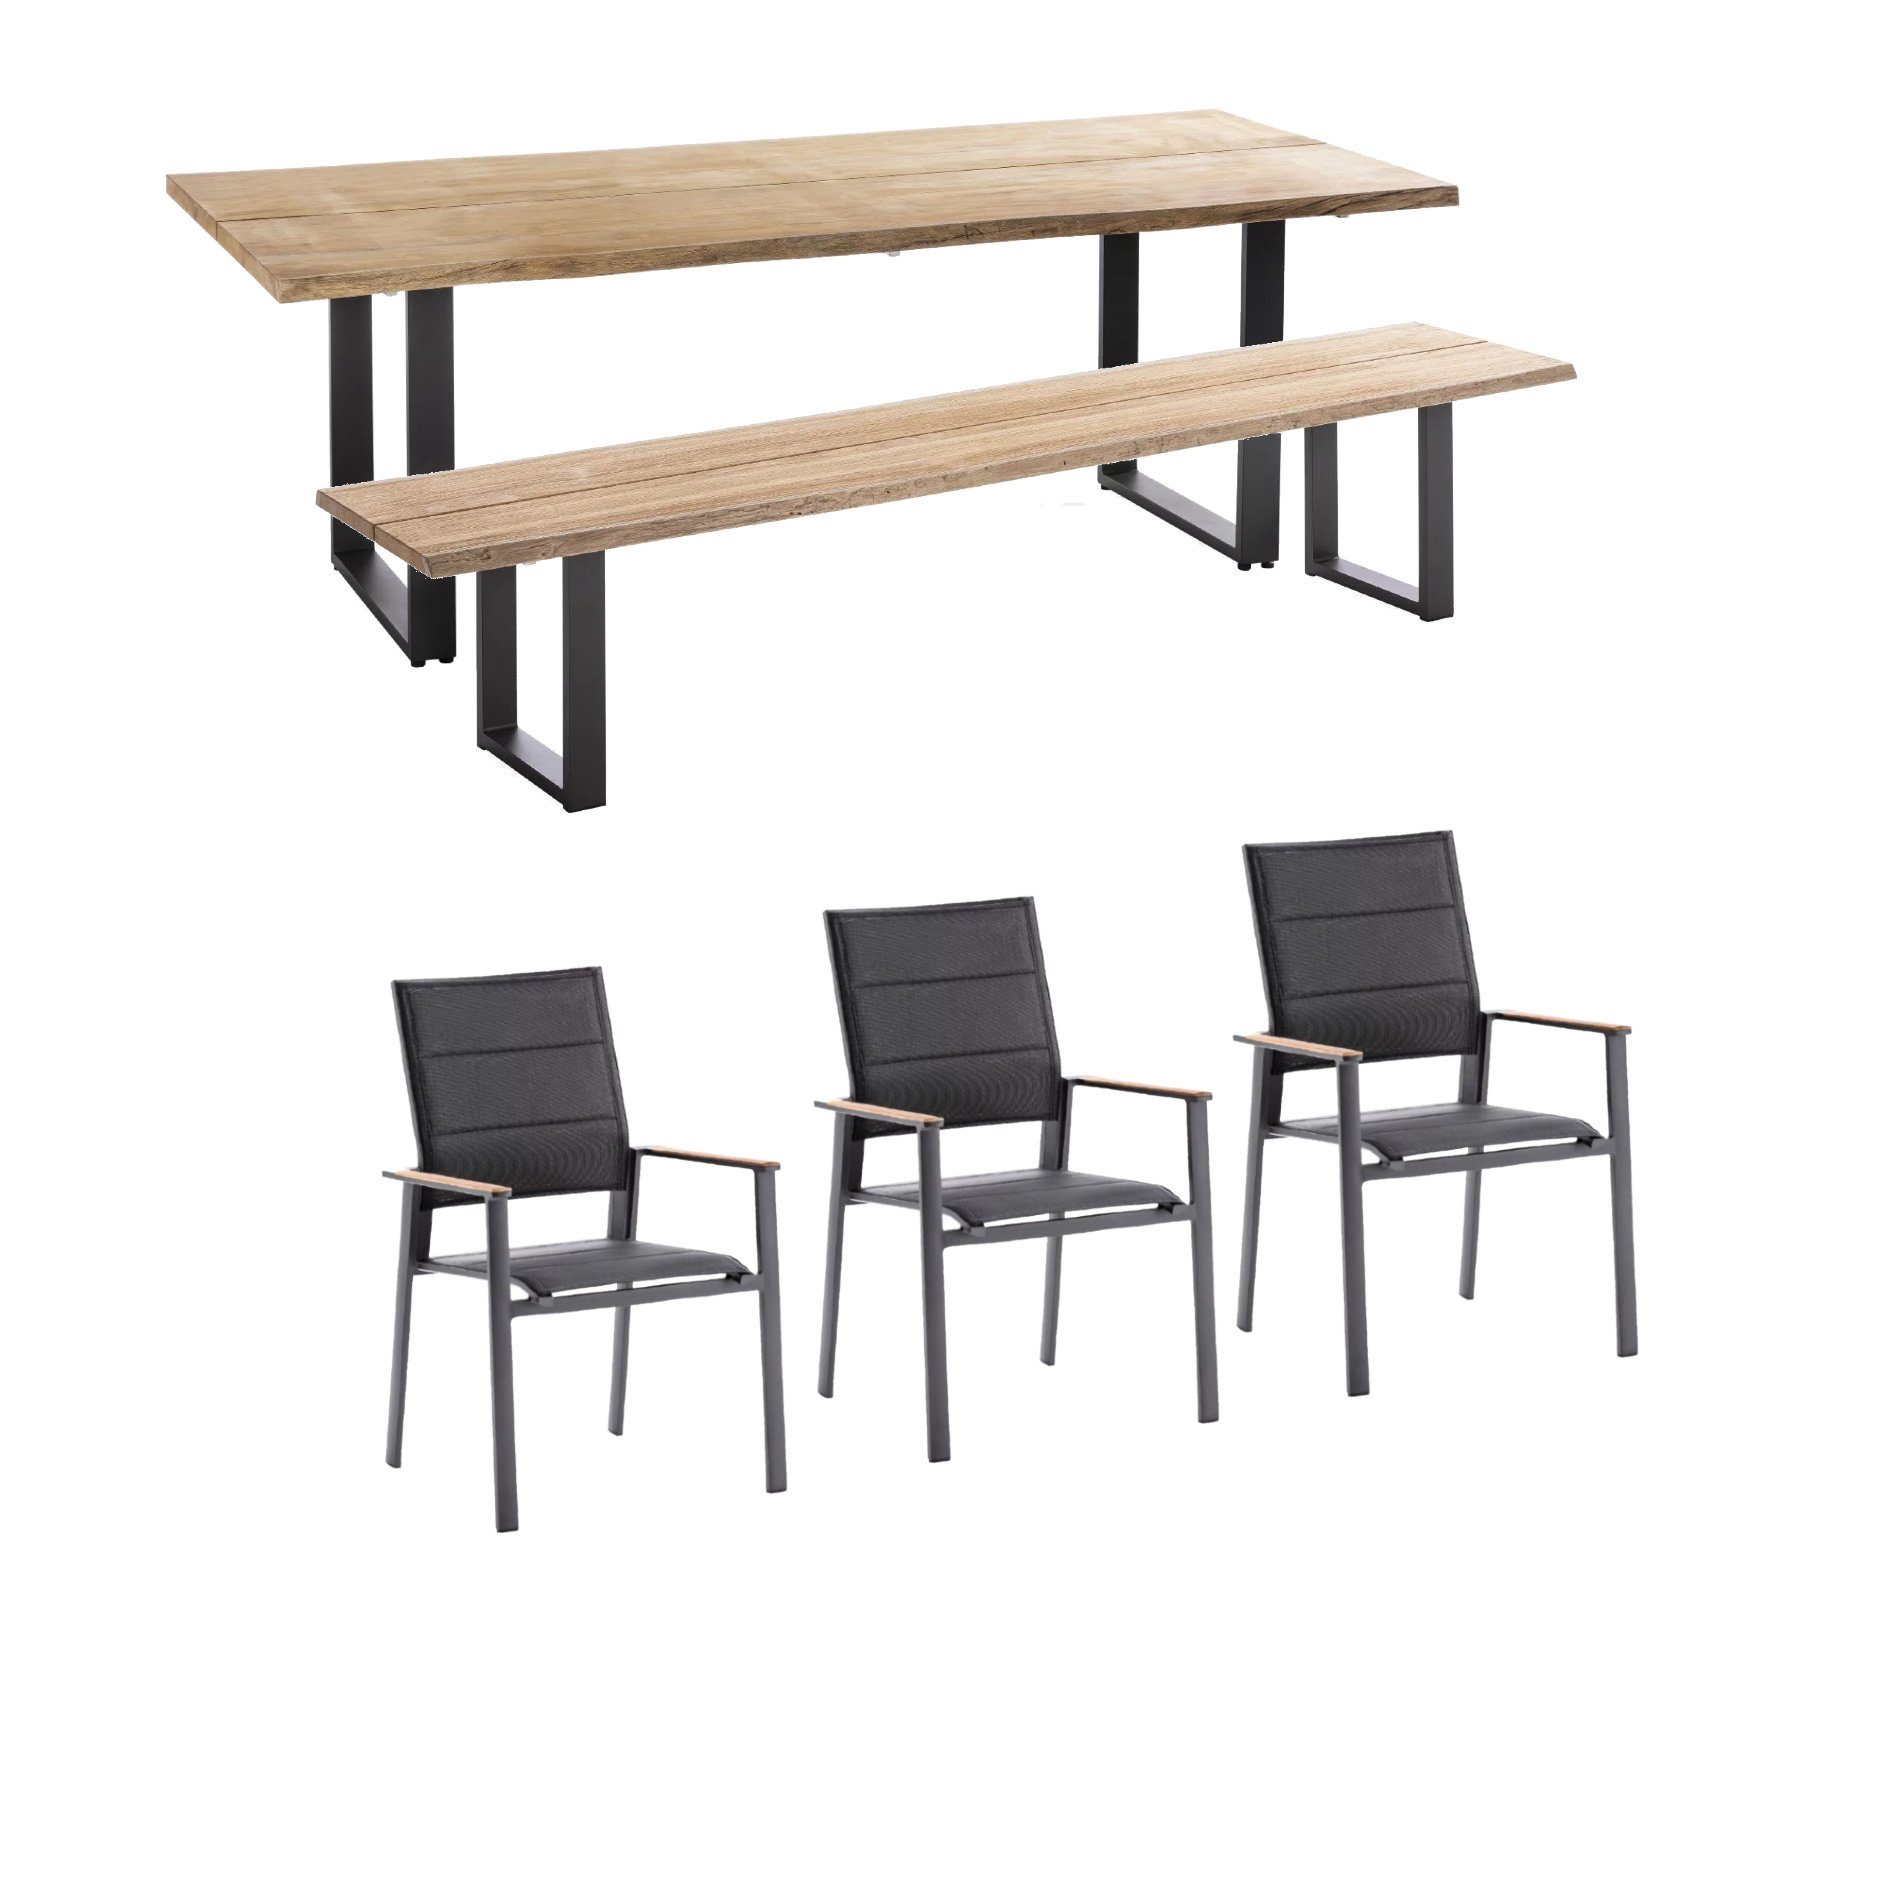 Niehoff Gartenmöbel-Set mit Tisch und Bank "Solid" und Stapelstuhl "Revent", Aluminium anthrazit, Tischplatte Teak, Sitz-und Rückenfläche gepolstert schwarz